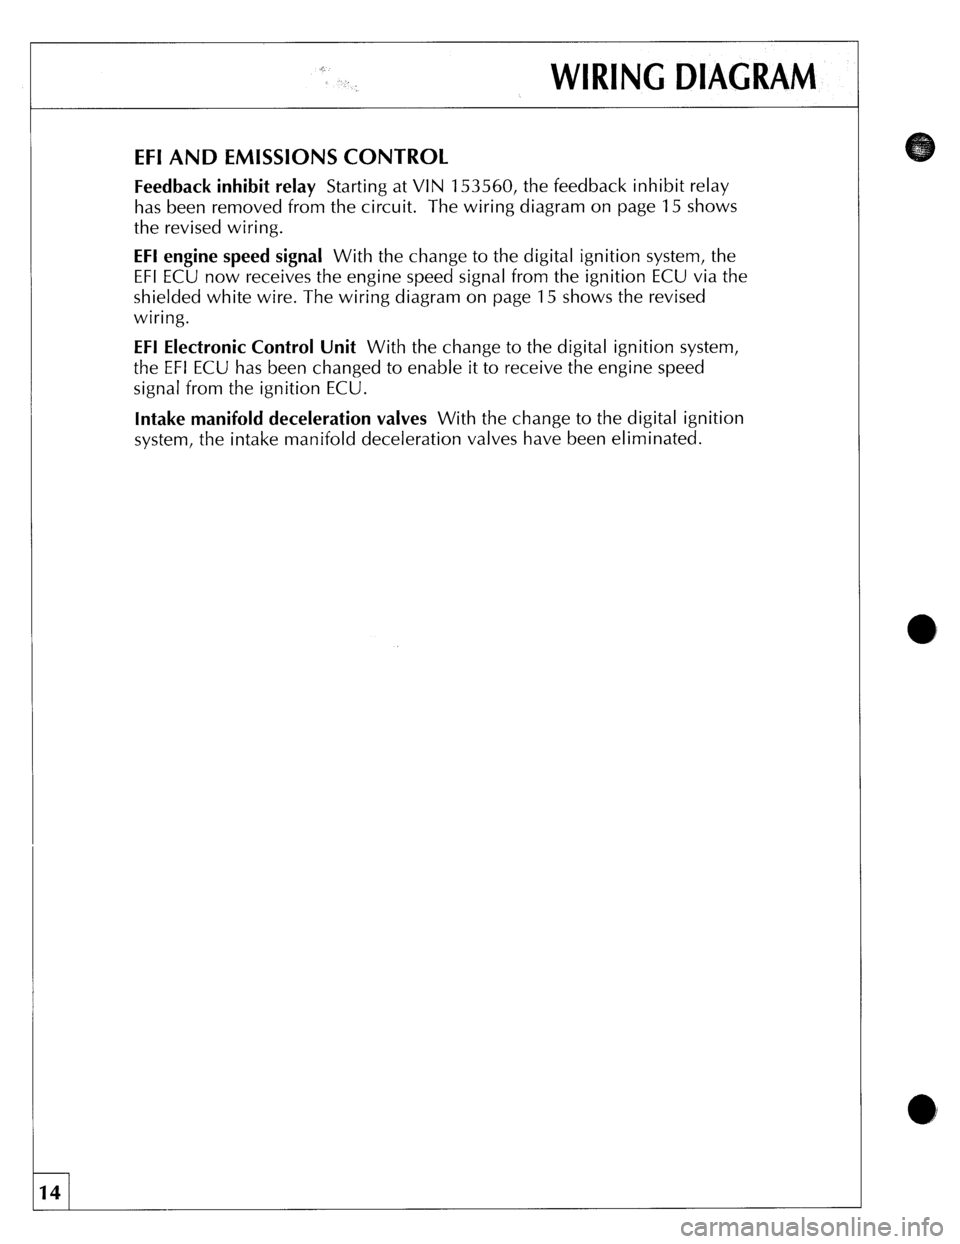 JAGUAR XJS 1989 1.G Update Manual 